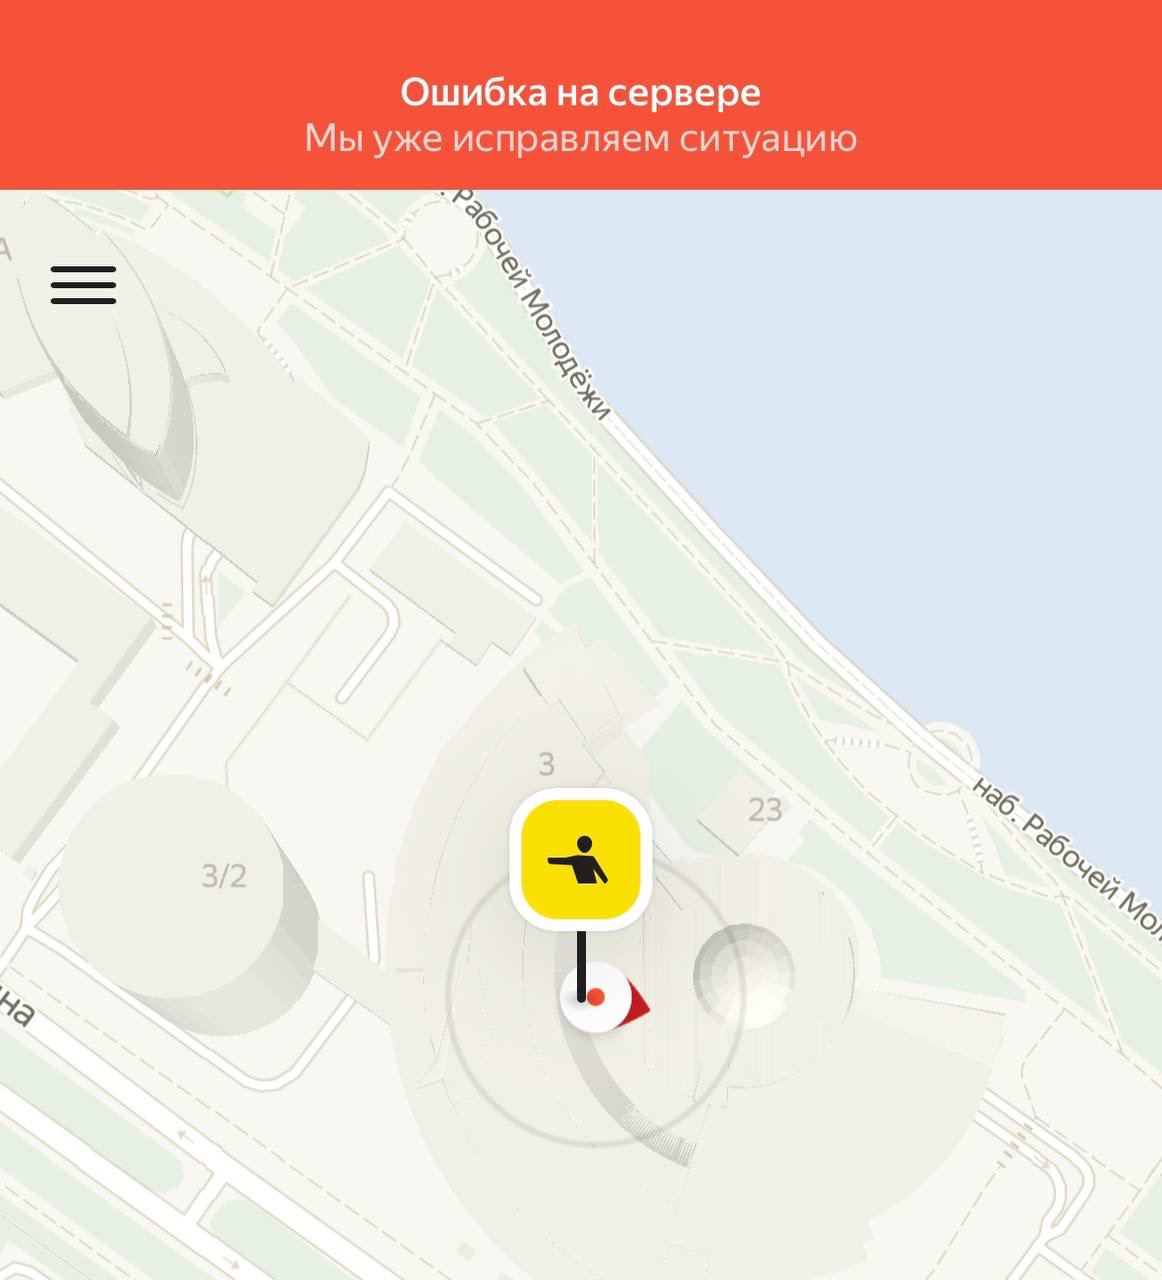 В работе «Яндекса» произошёл сбой